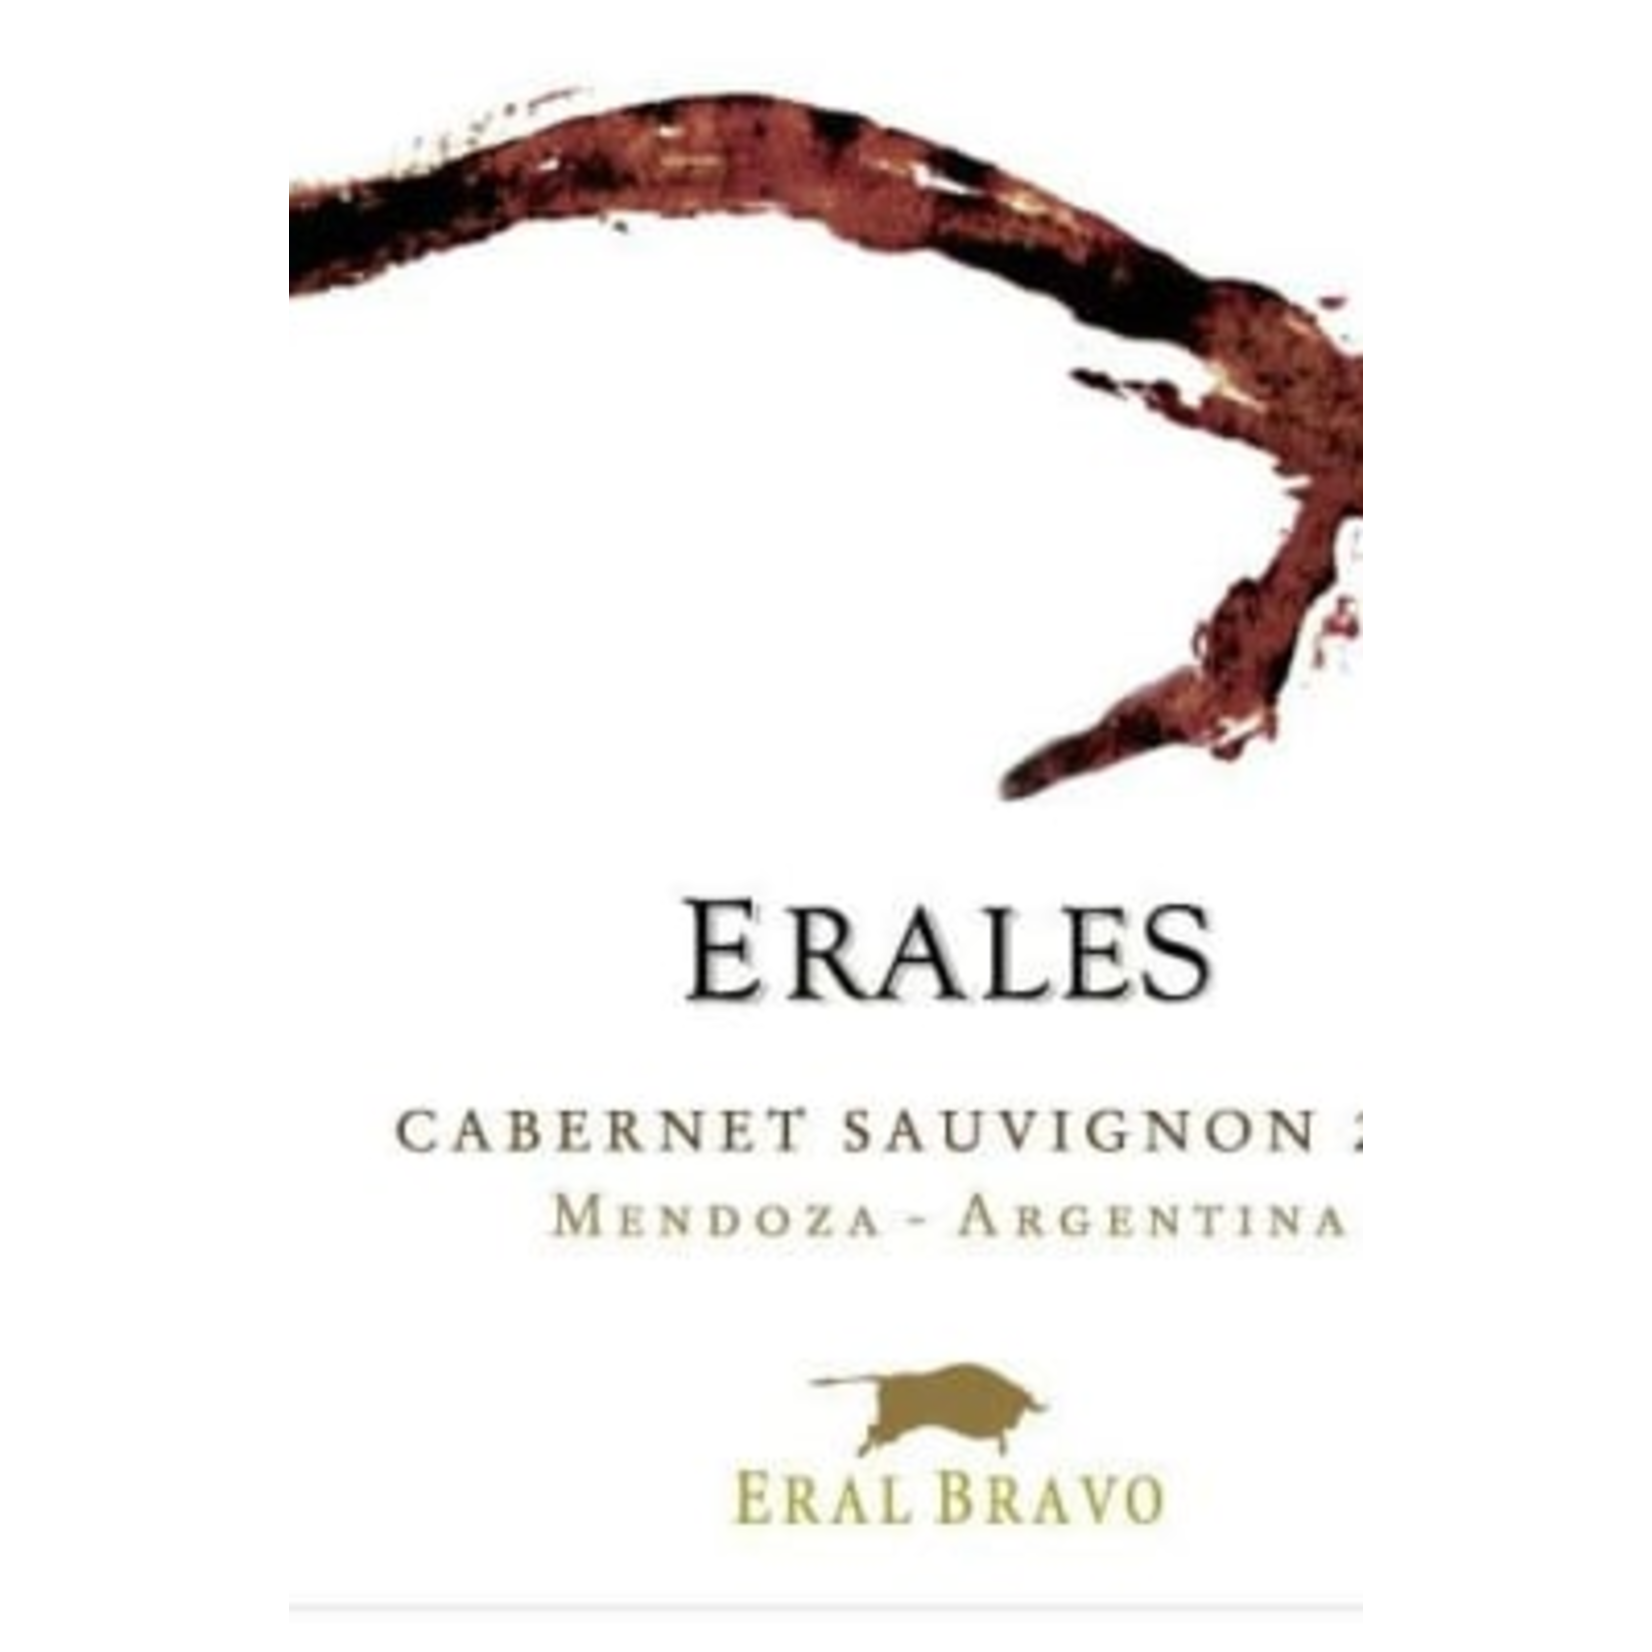 Earl Bravo Erales Cabernet Sauvignon 2013  Mendoza, Argentina